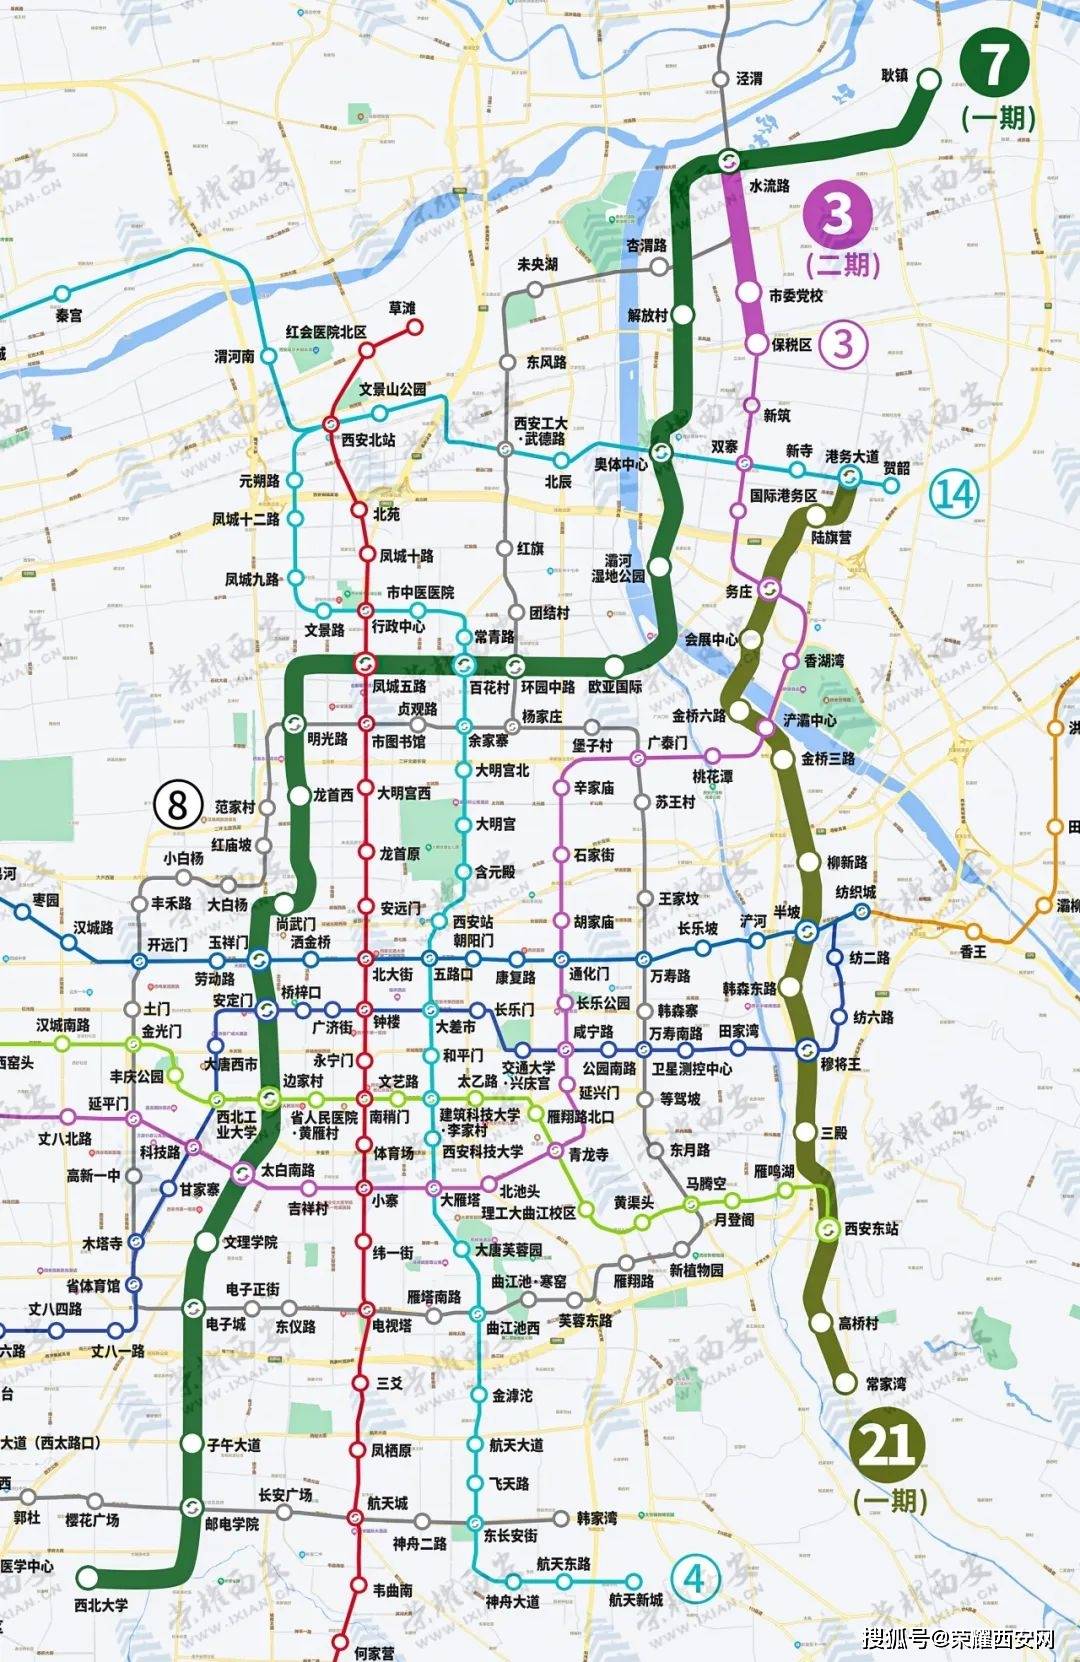 西安地铁四期大幅缩水,这些区域成规划盲区!